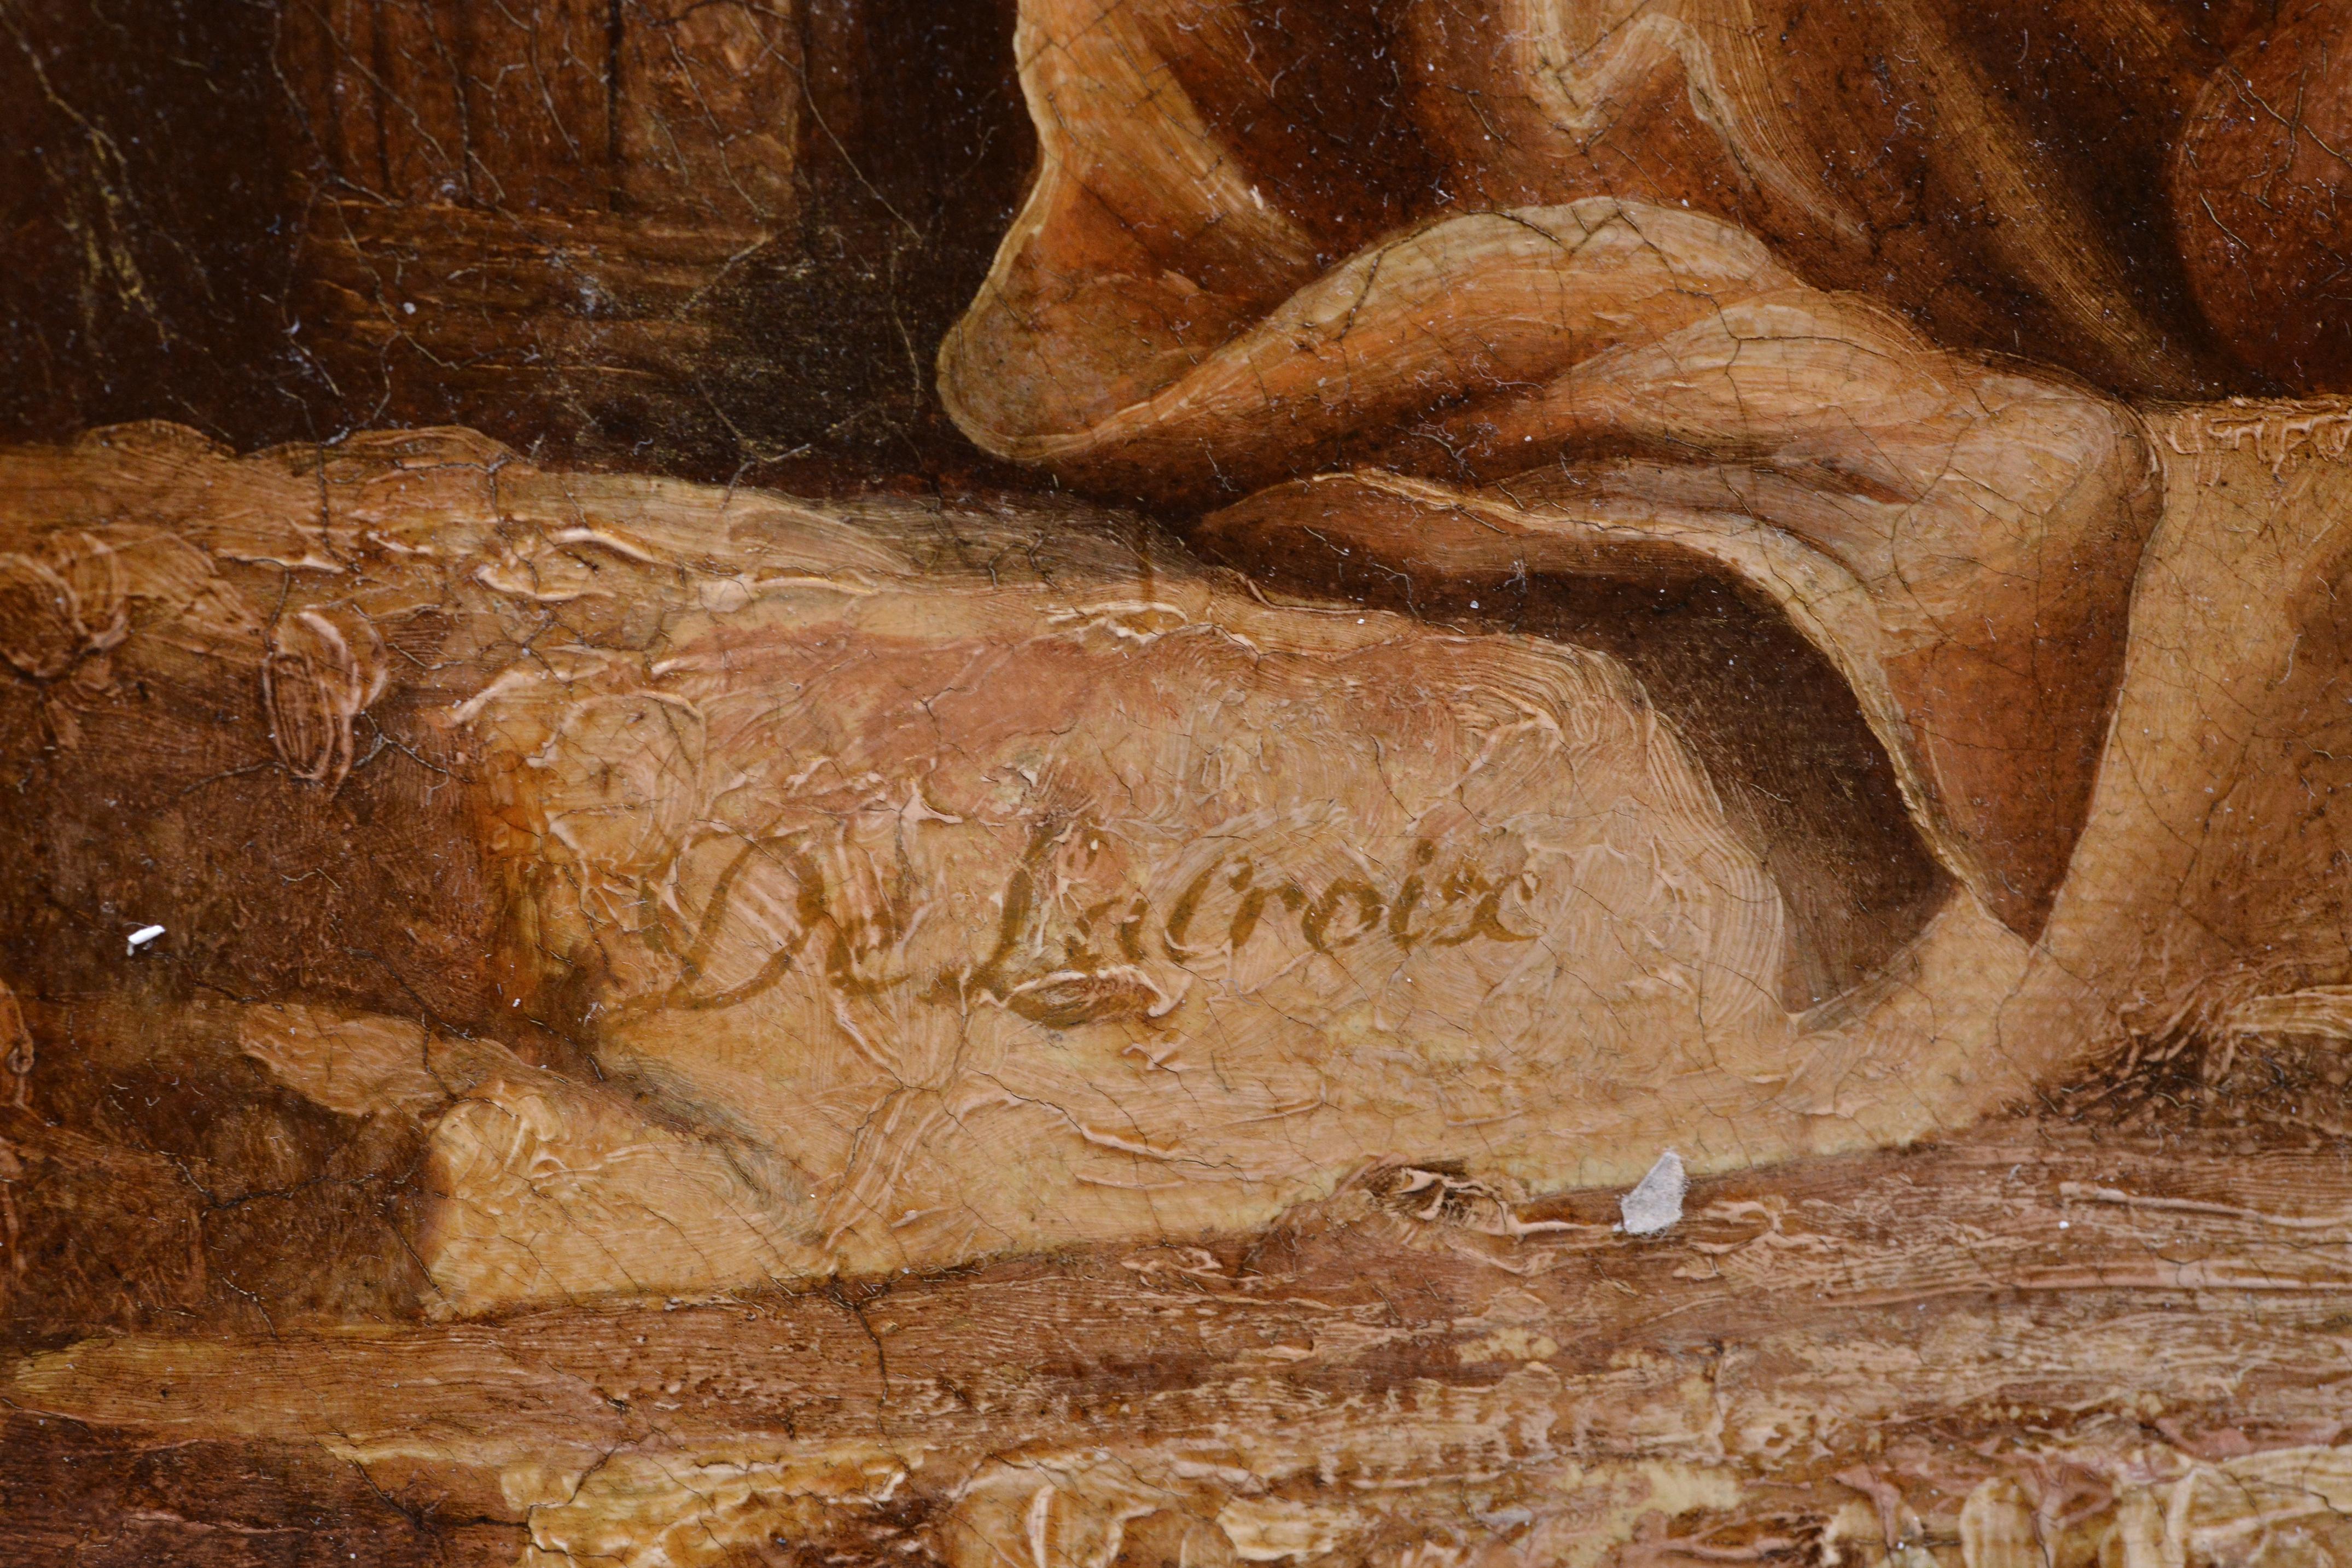 Attribué à Charles François Grenier de Lacroix ou Charles - François Lacroix de Marseille (1700 - 1782) comme signé en bas à gauche sur la pierre 